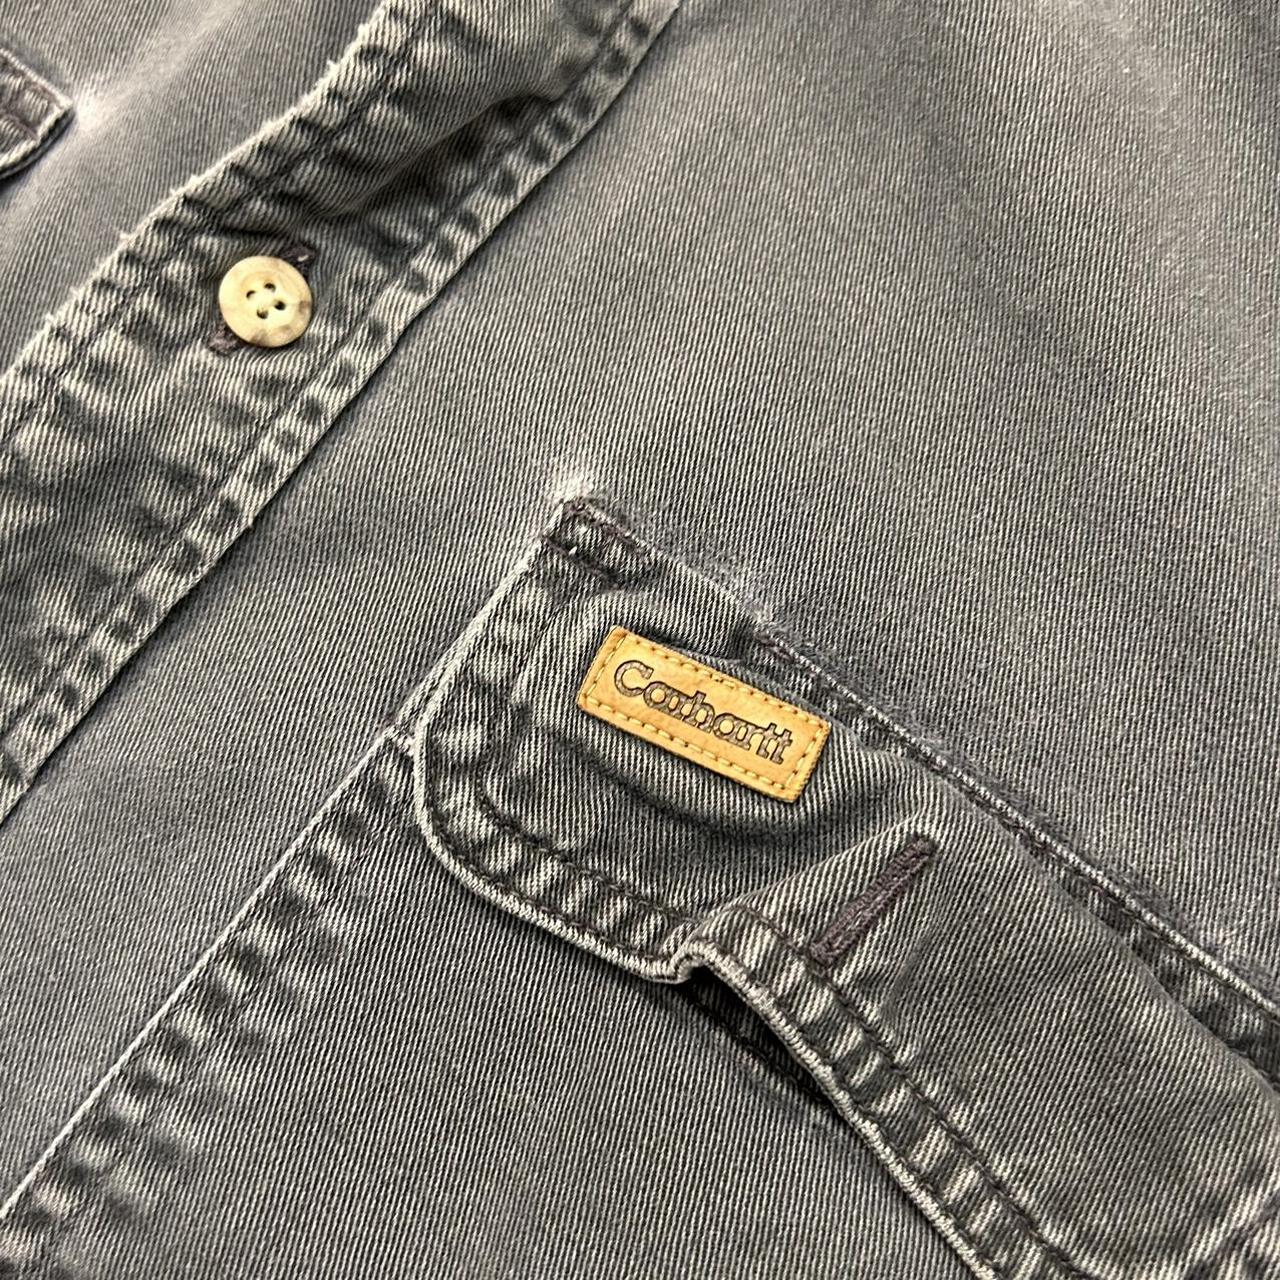 Vintage Carhartt Button Up Shirt Height:... - Depop